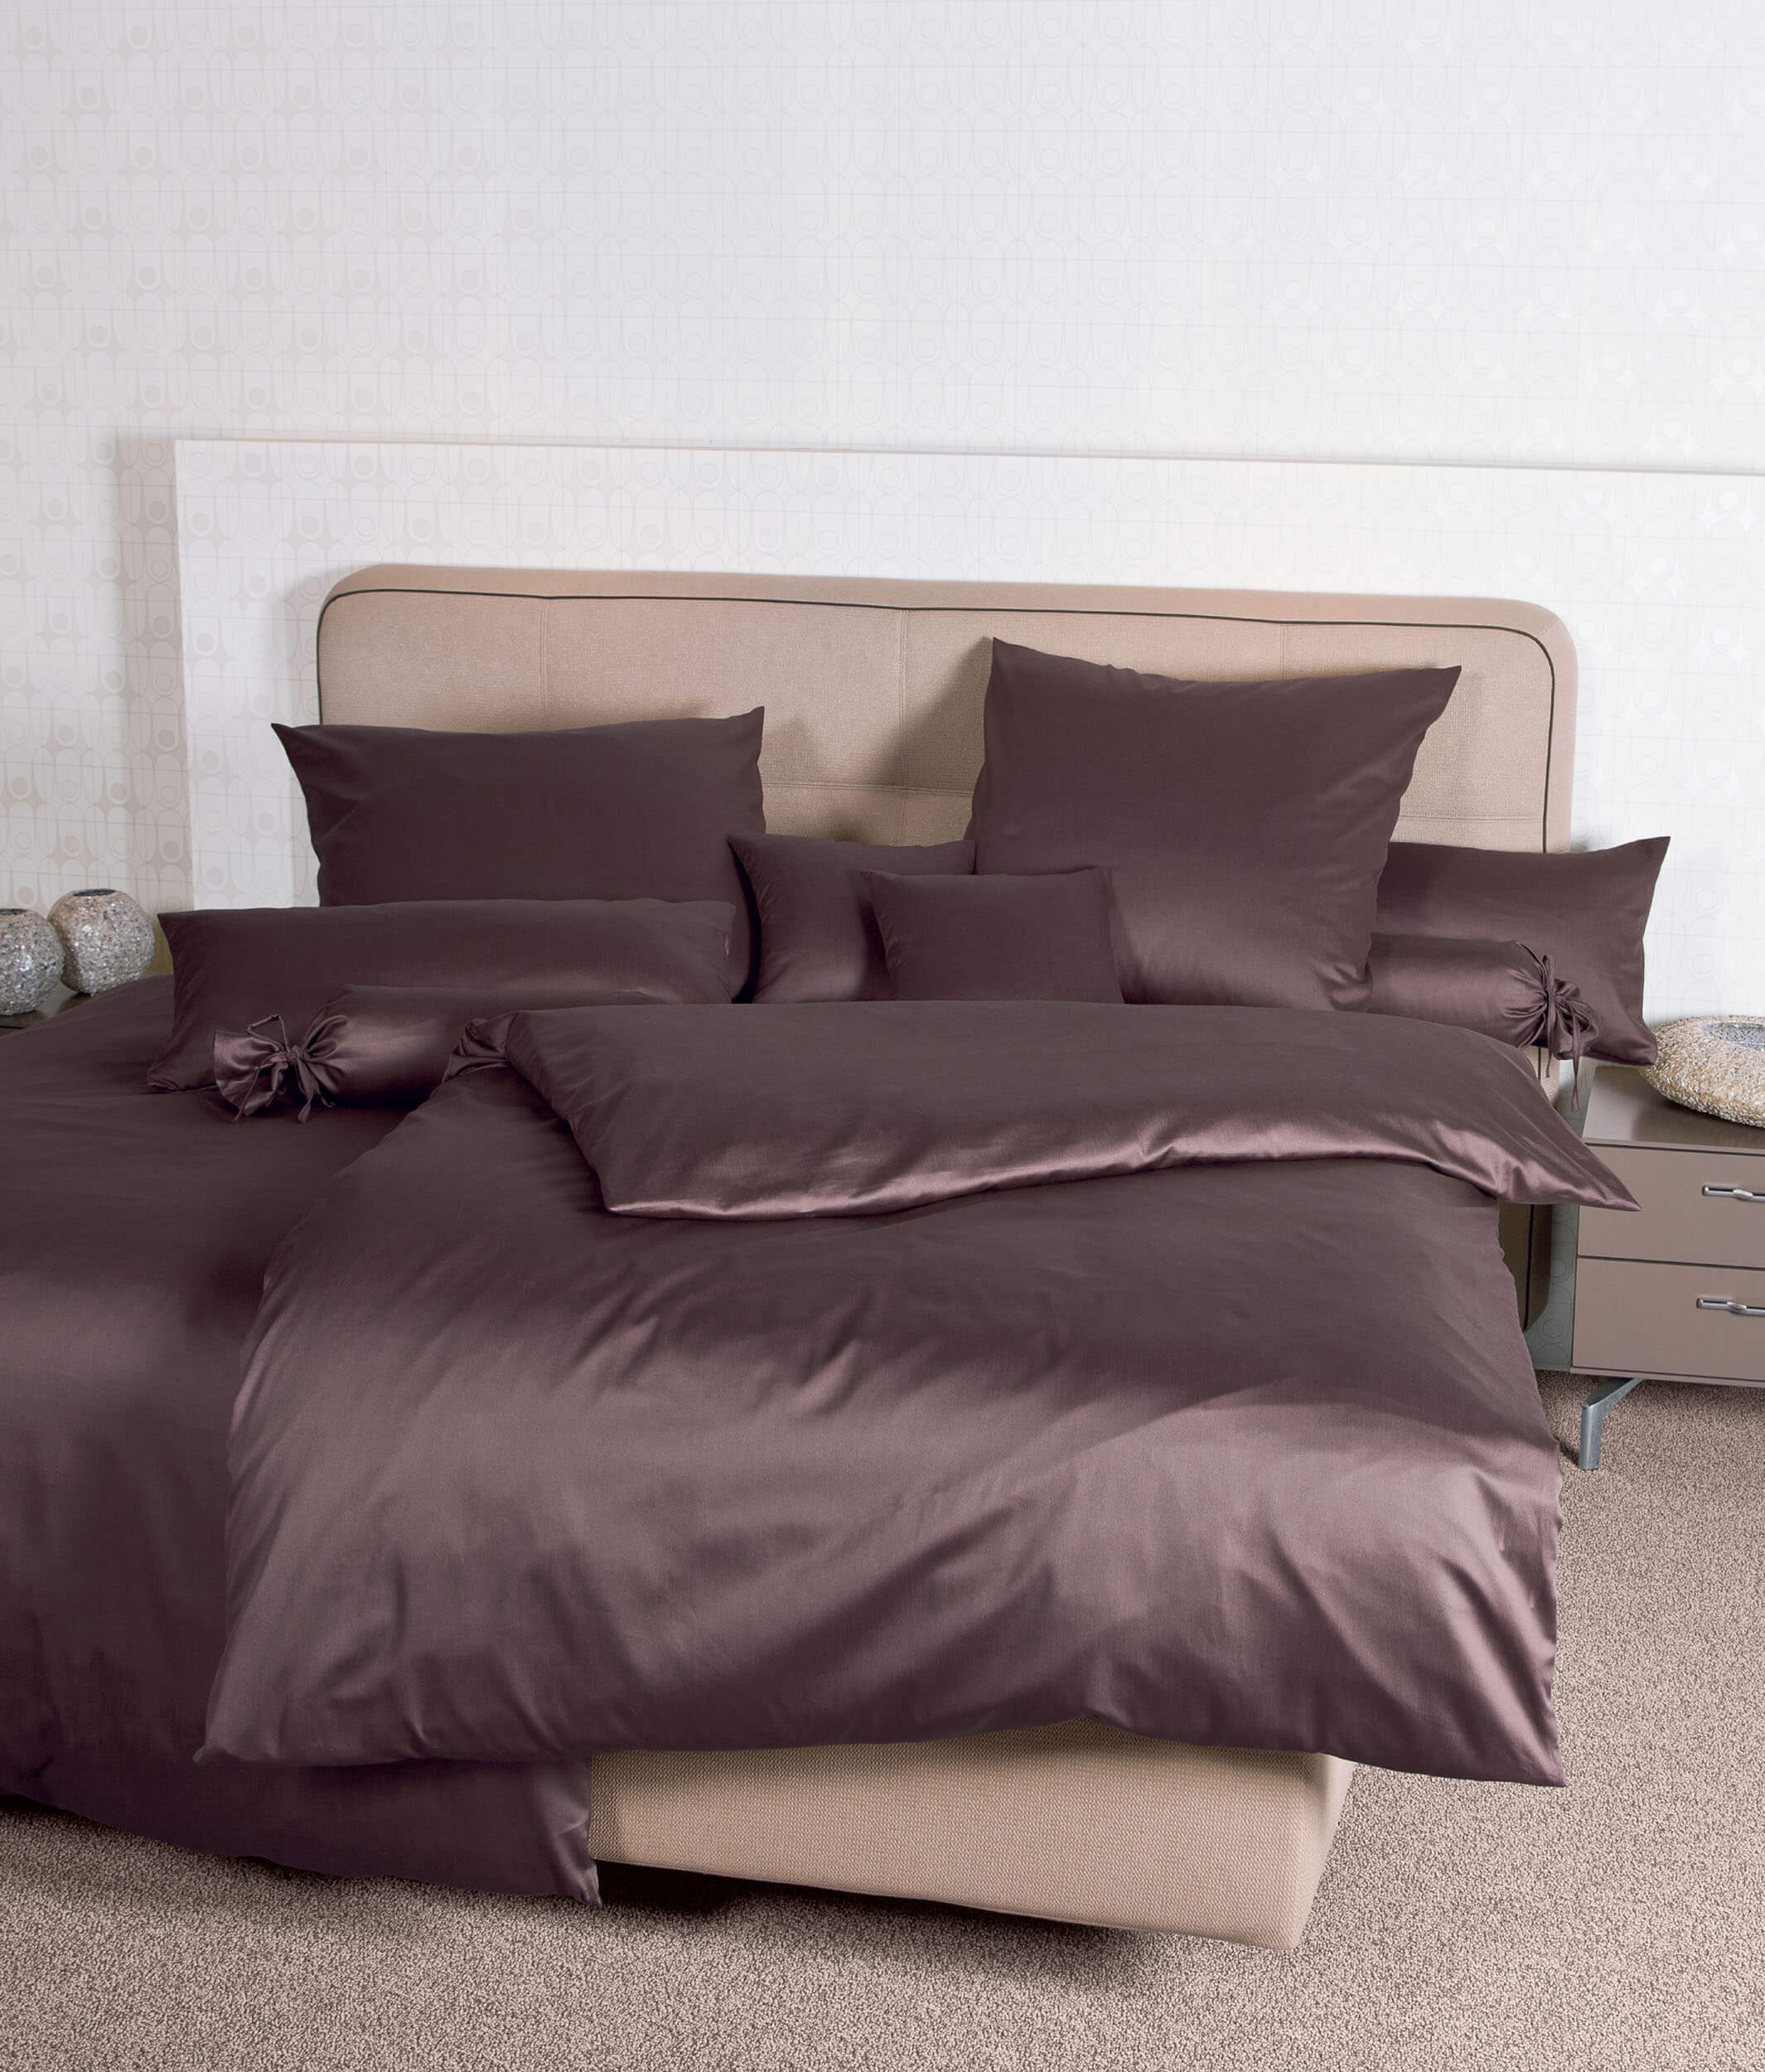 Коричневое постельное белье Colors Schoko ☞ Размер пододеяльника: 200 x 220 см ☞ Размер простыни: Без простыни ☞ Размер наволочек: 50 x 70 см (2 шт.)